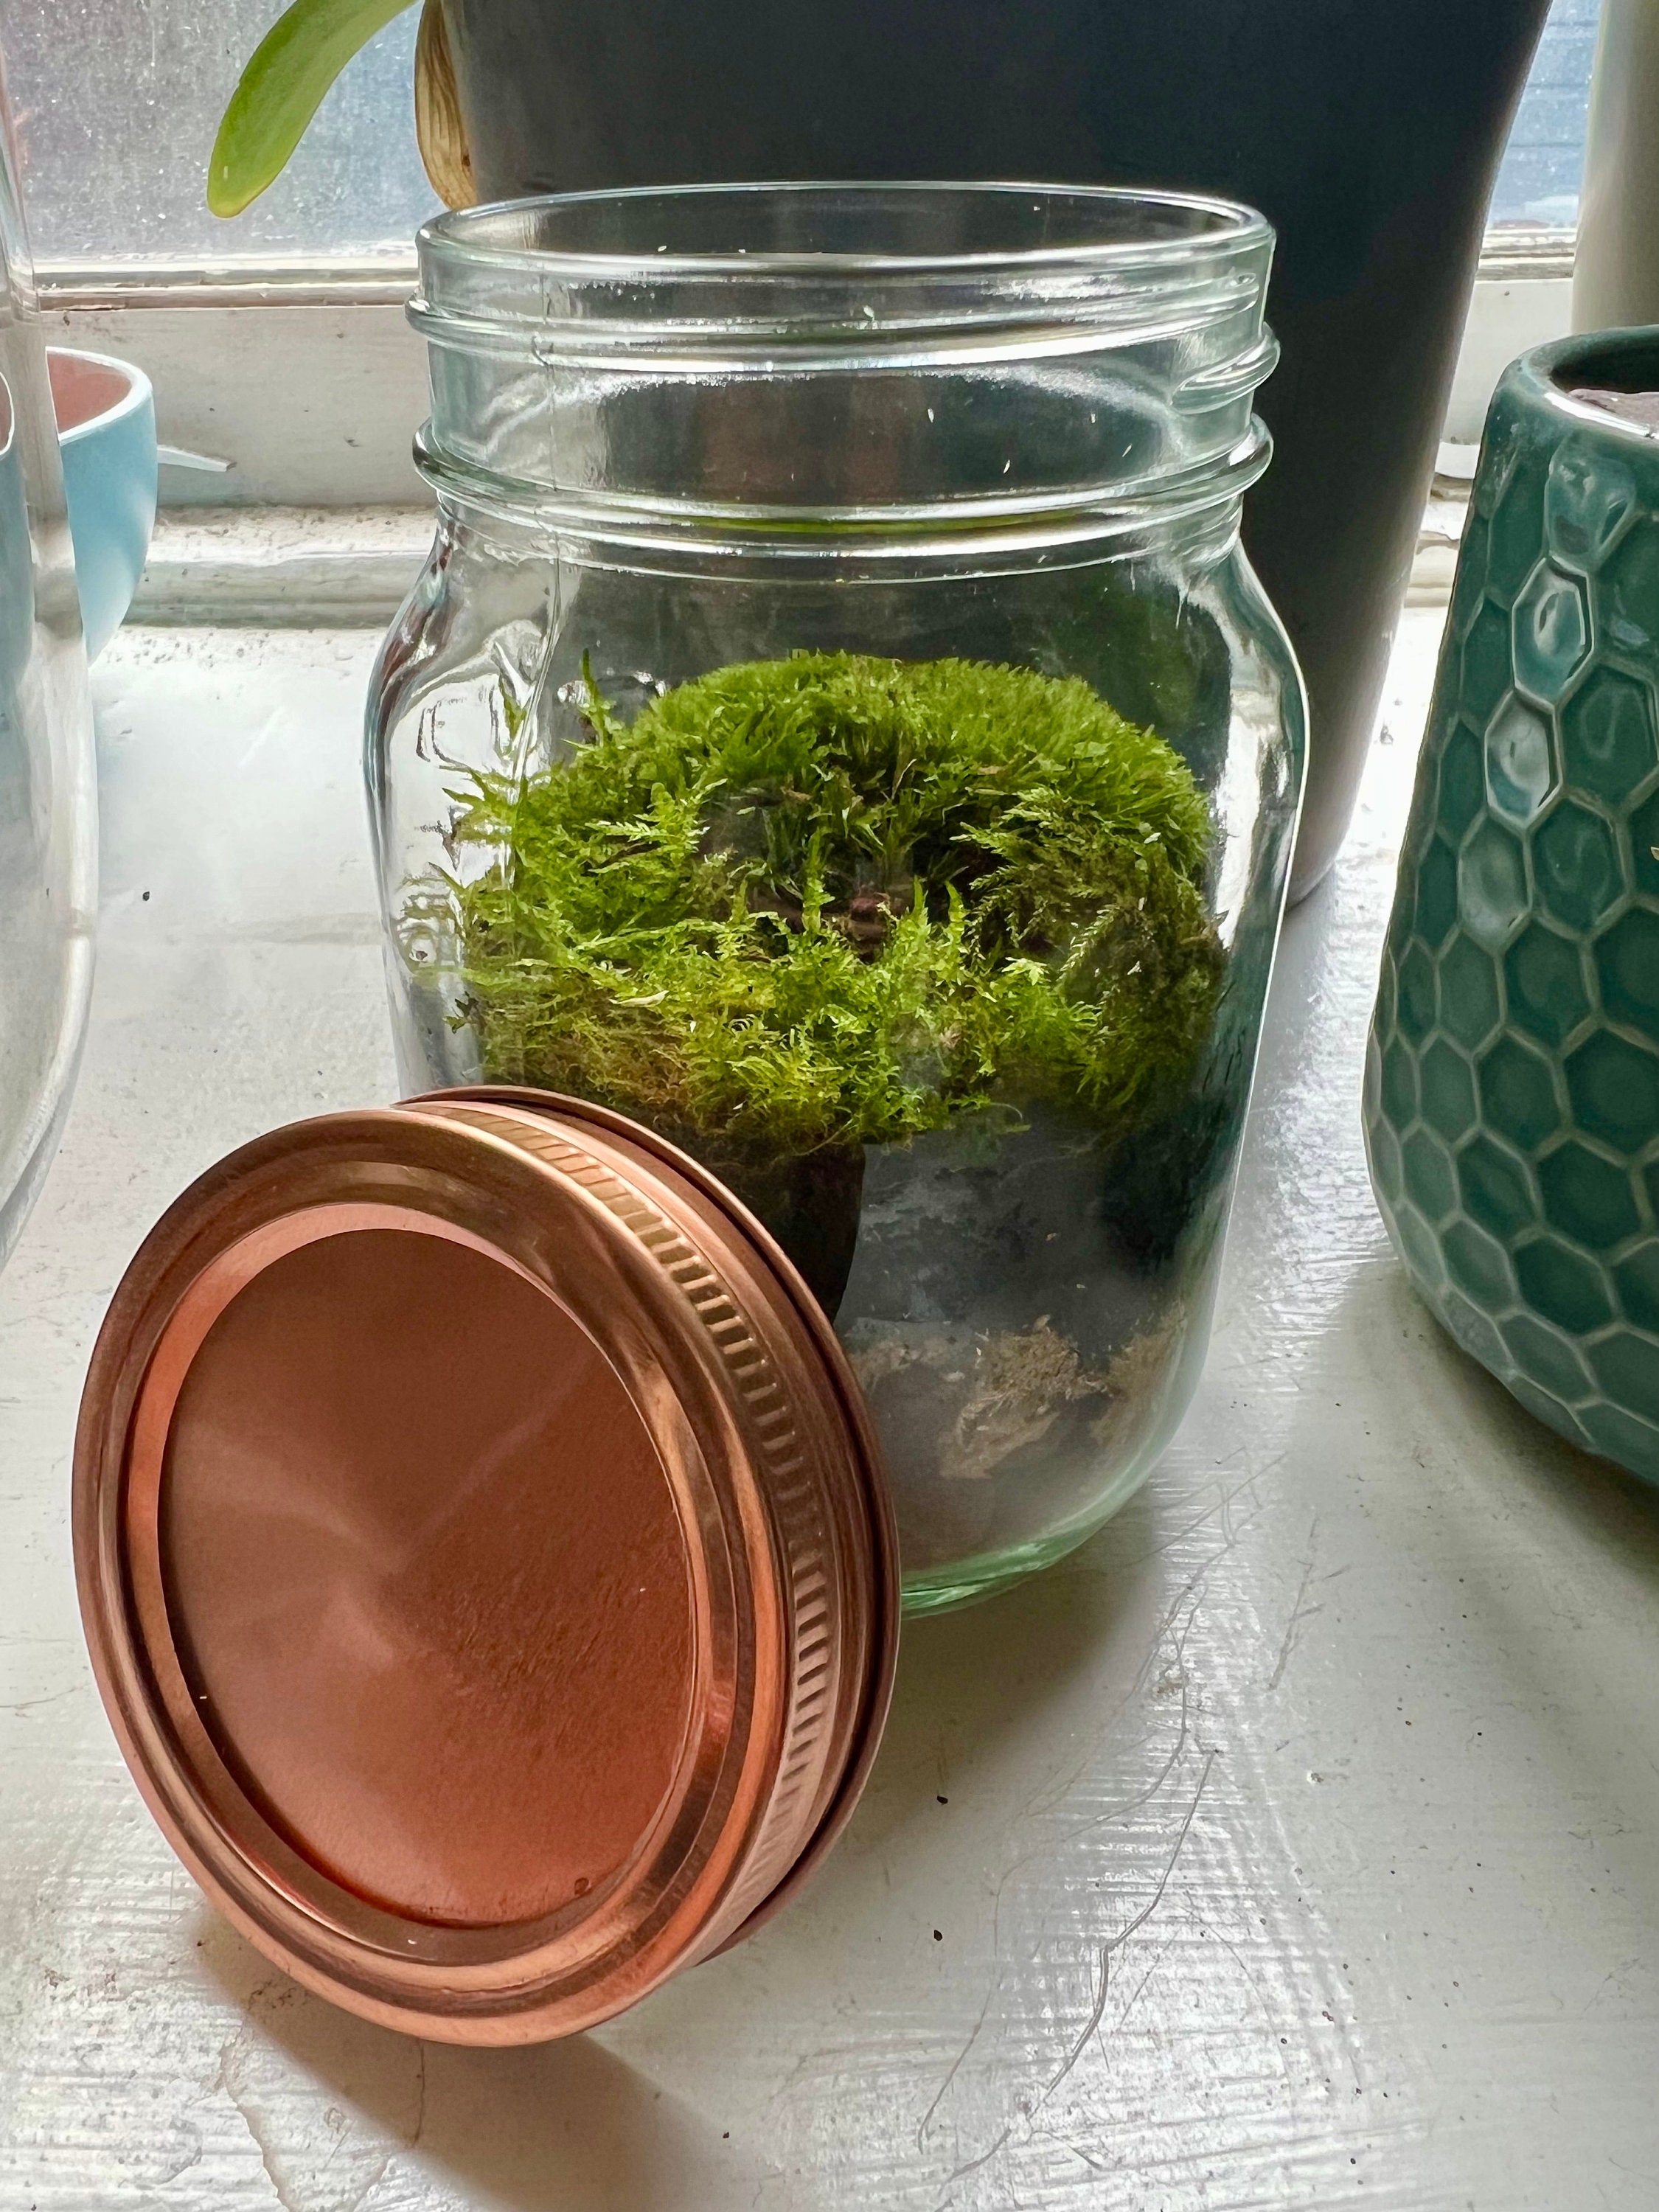 Live Moss Terrarium Kit • Mini Mossarium • DIY Moss Terrarium • Plant Lover  Gift